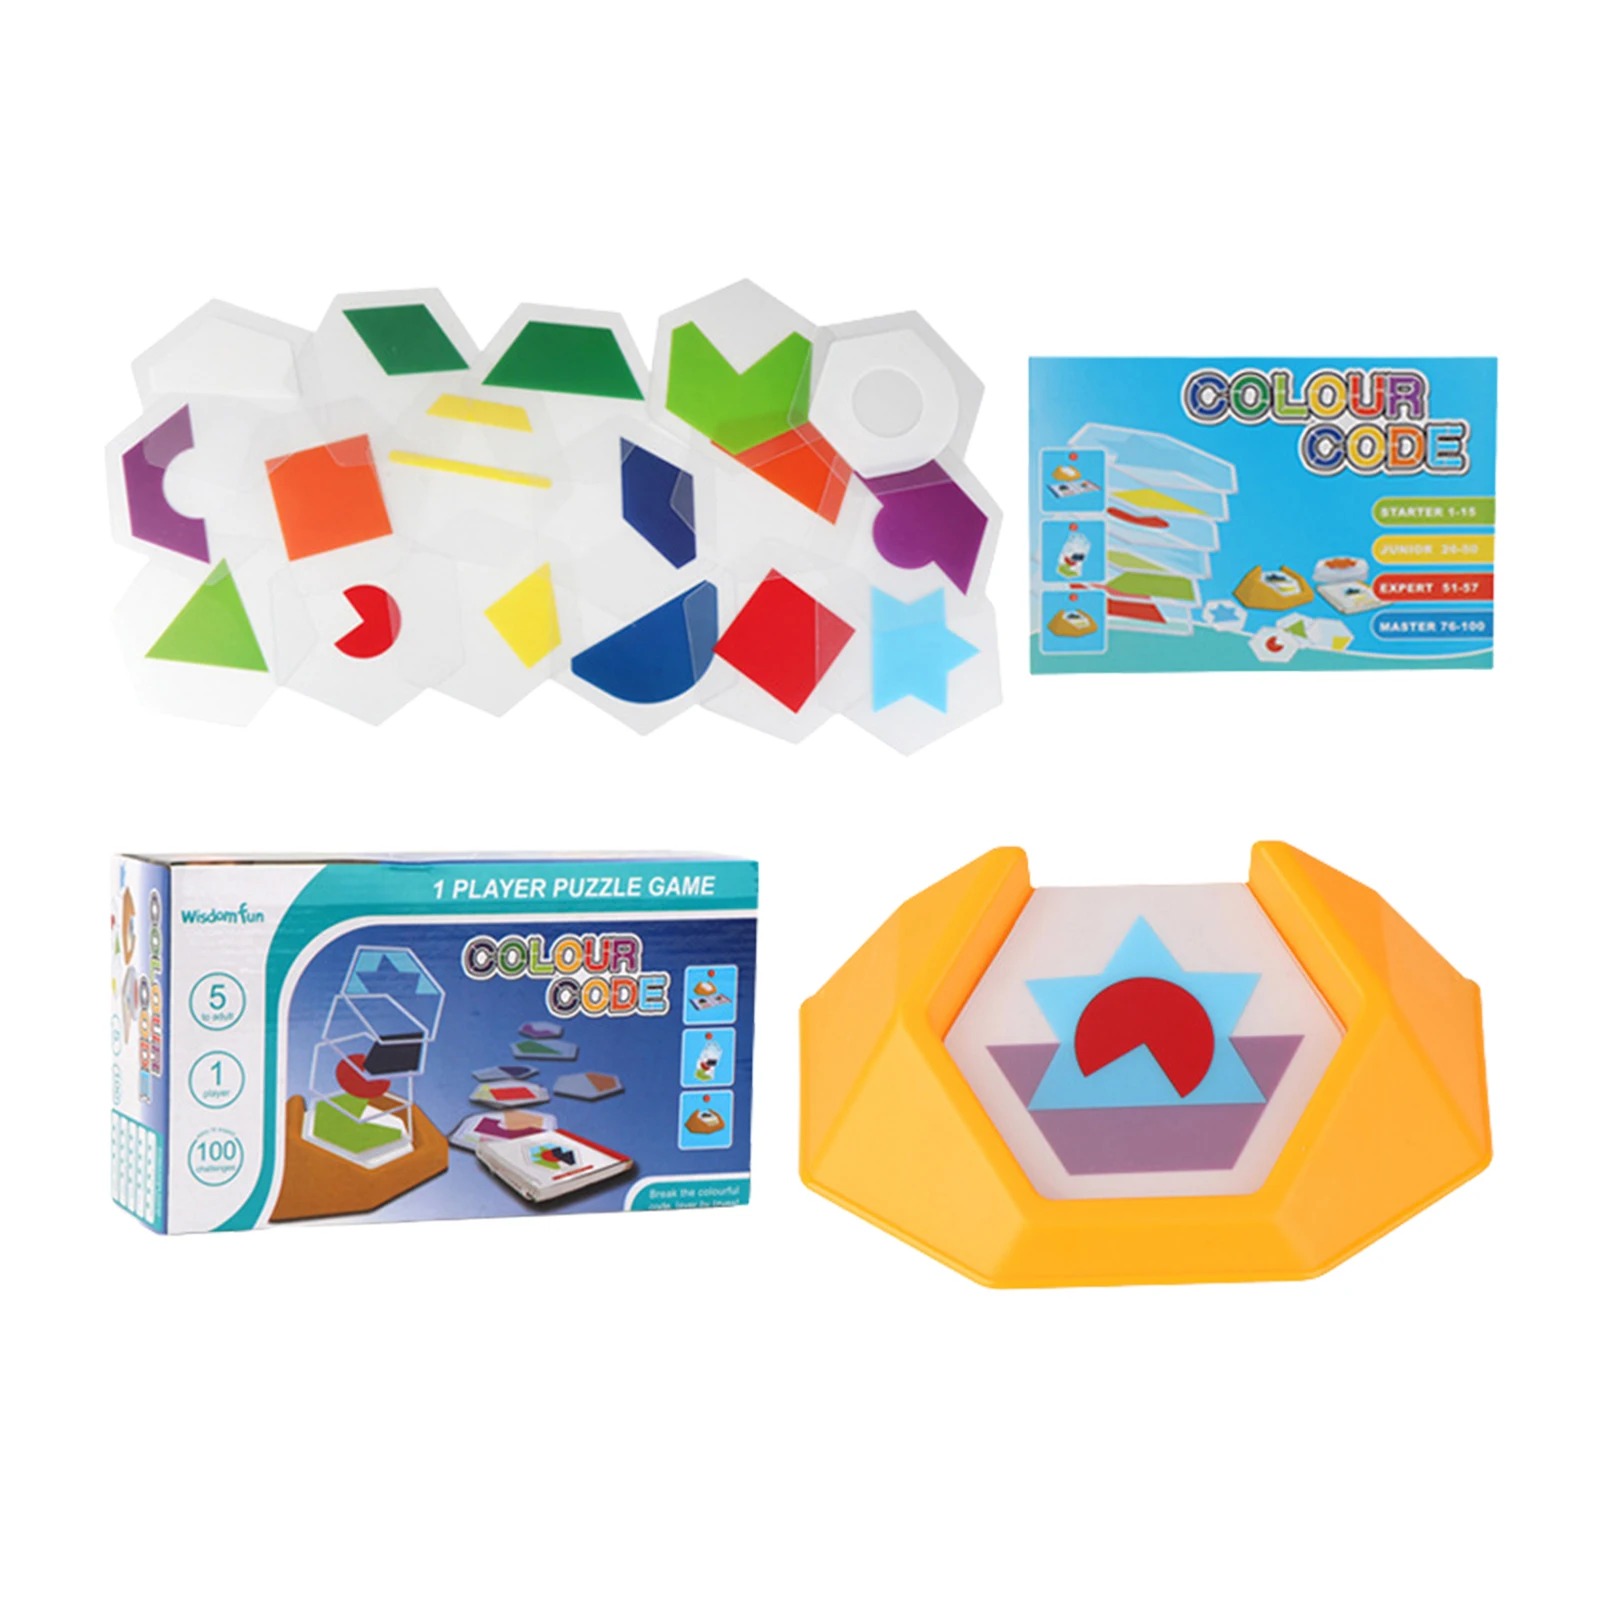 

Набор пазлов в форме Tangram, разноцветные обучающие игрушки для 3-летних детей 100 года, задающая образовательная игра для развития логики